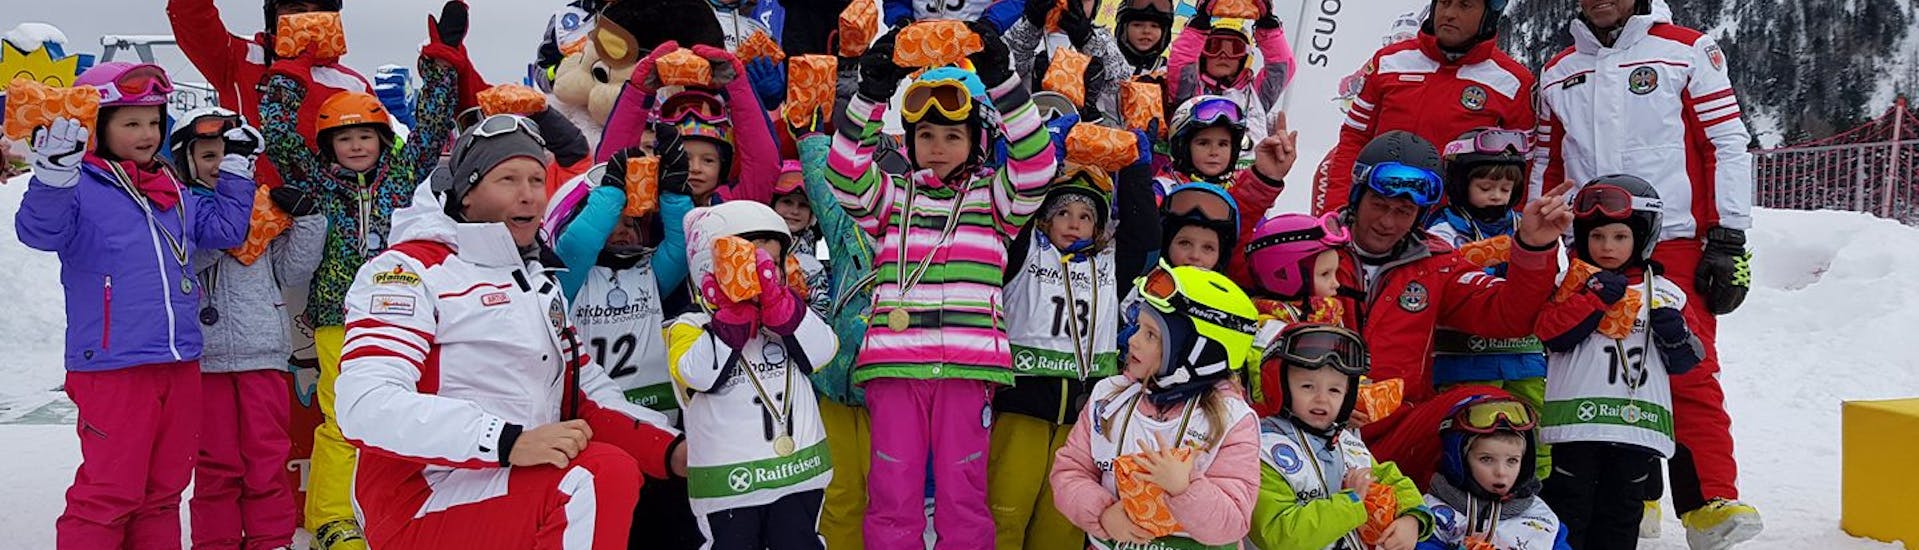 Groep kinderen op de foto na de skilessen voor kinderen (4-6 jaar) voor beginners met skischool Speikboden Ahrntal.